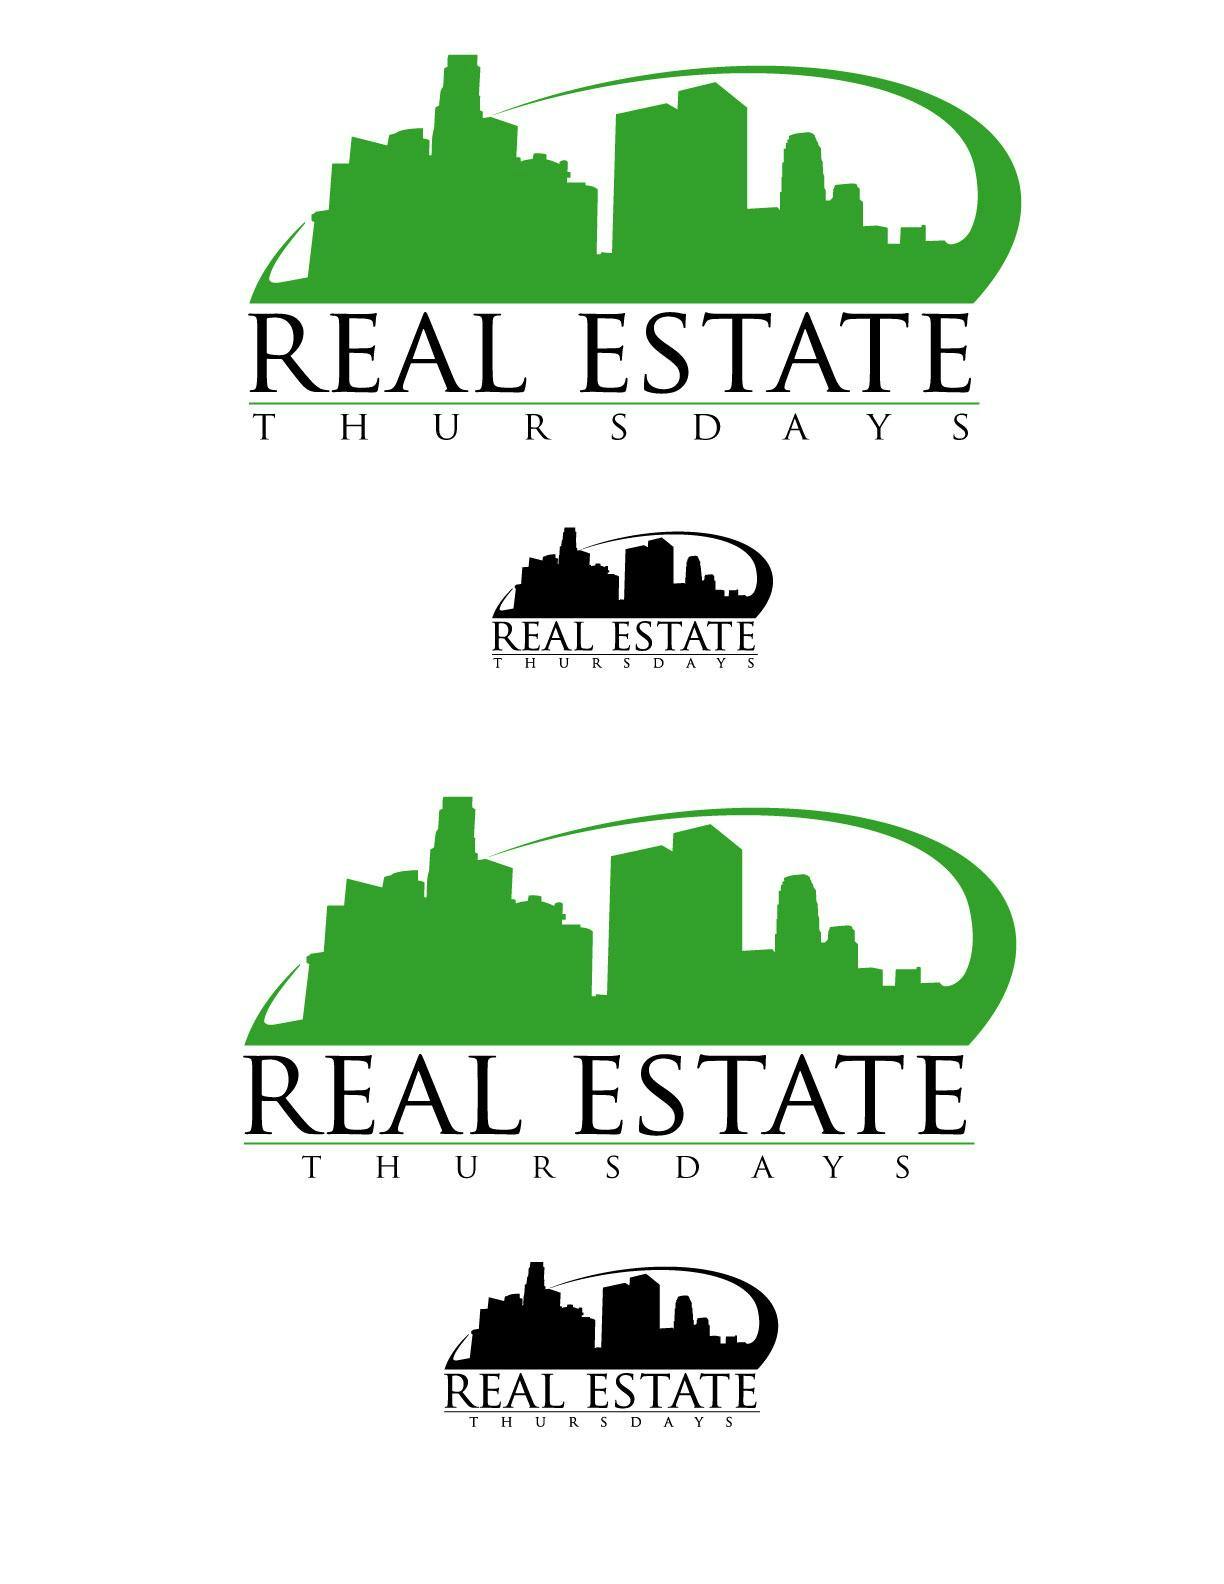 REAL ESTATE THURSDAYS: Landlording/Property Management